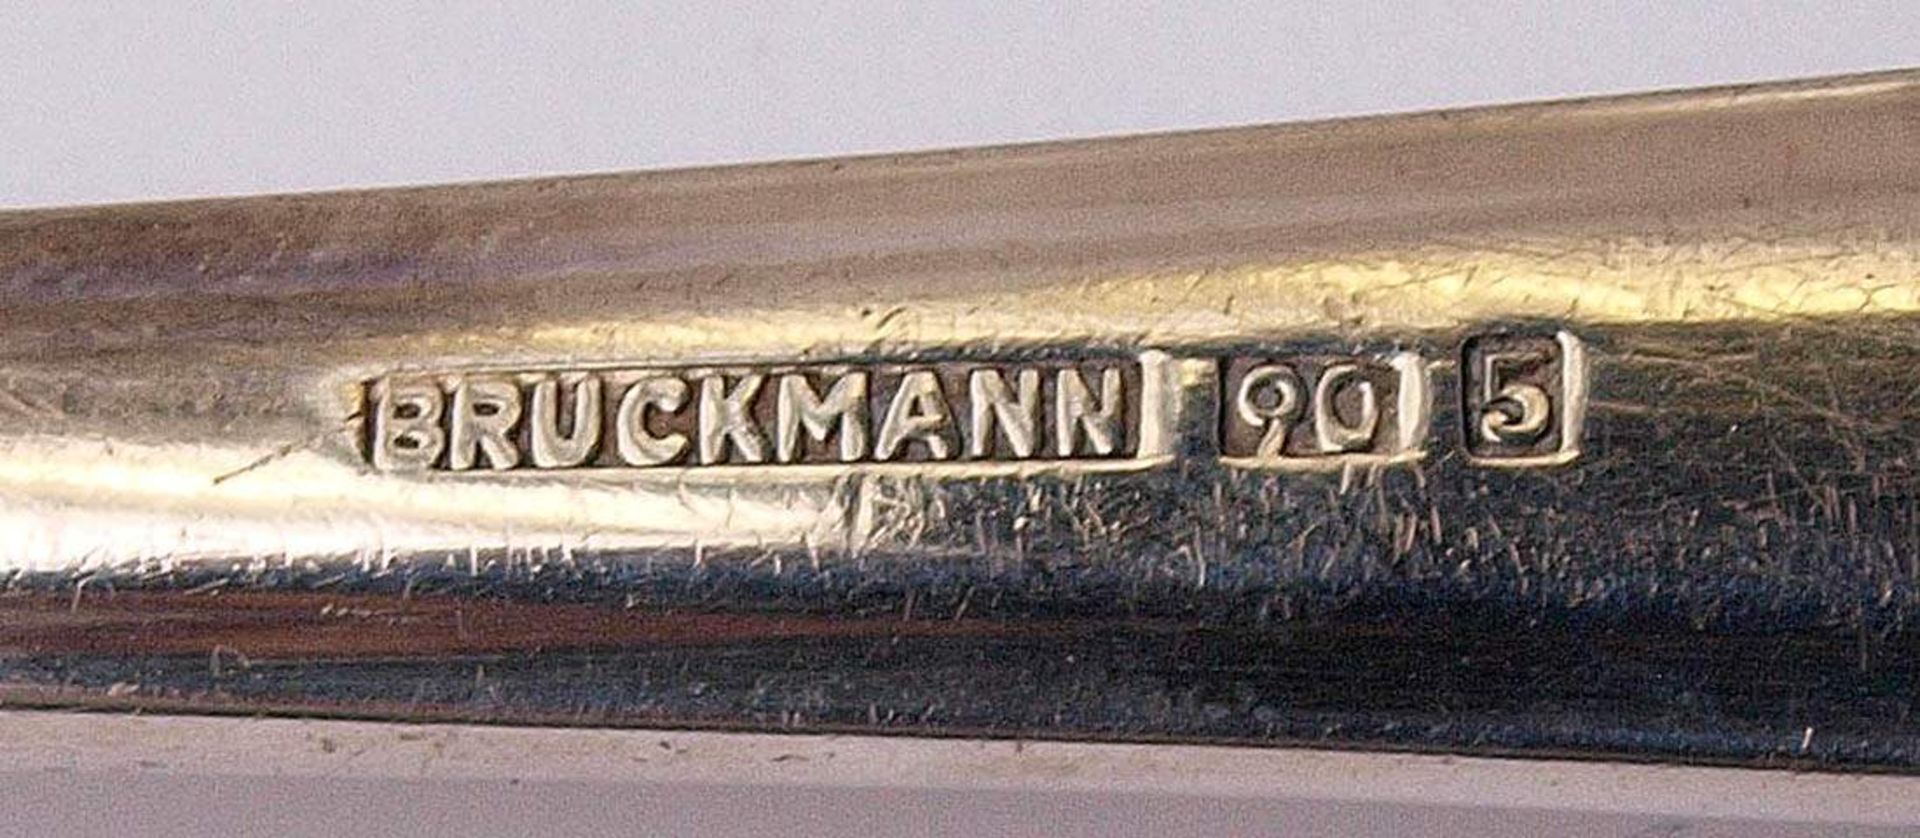 Bestecksatz, Bruckmann, um 1900Je sechs Messer, Gabeln, Suppenlöffel, Kuchengabeln und Kaffeelöffel, - Bild 2 aus 2